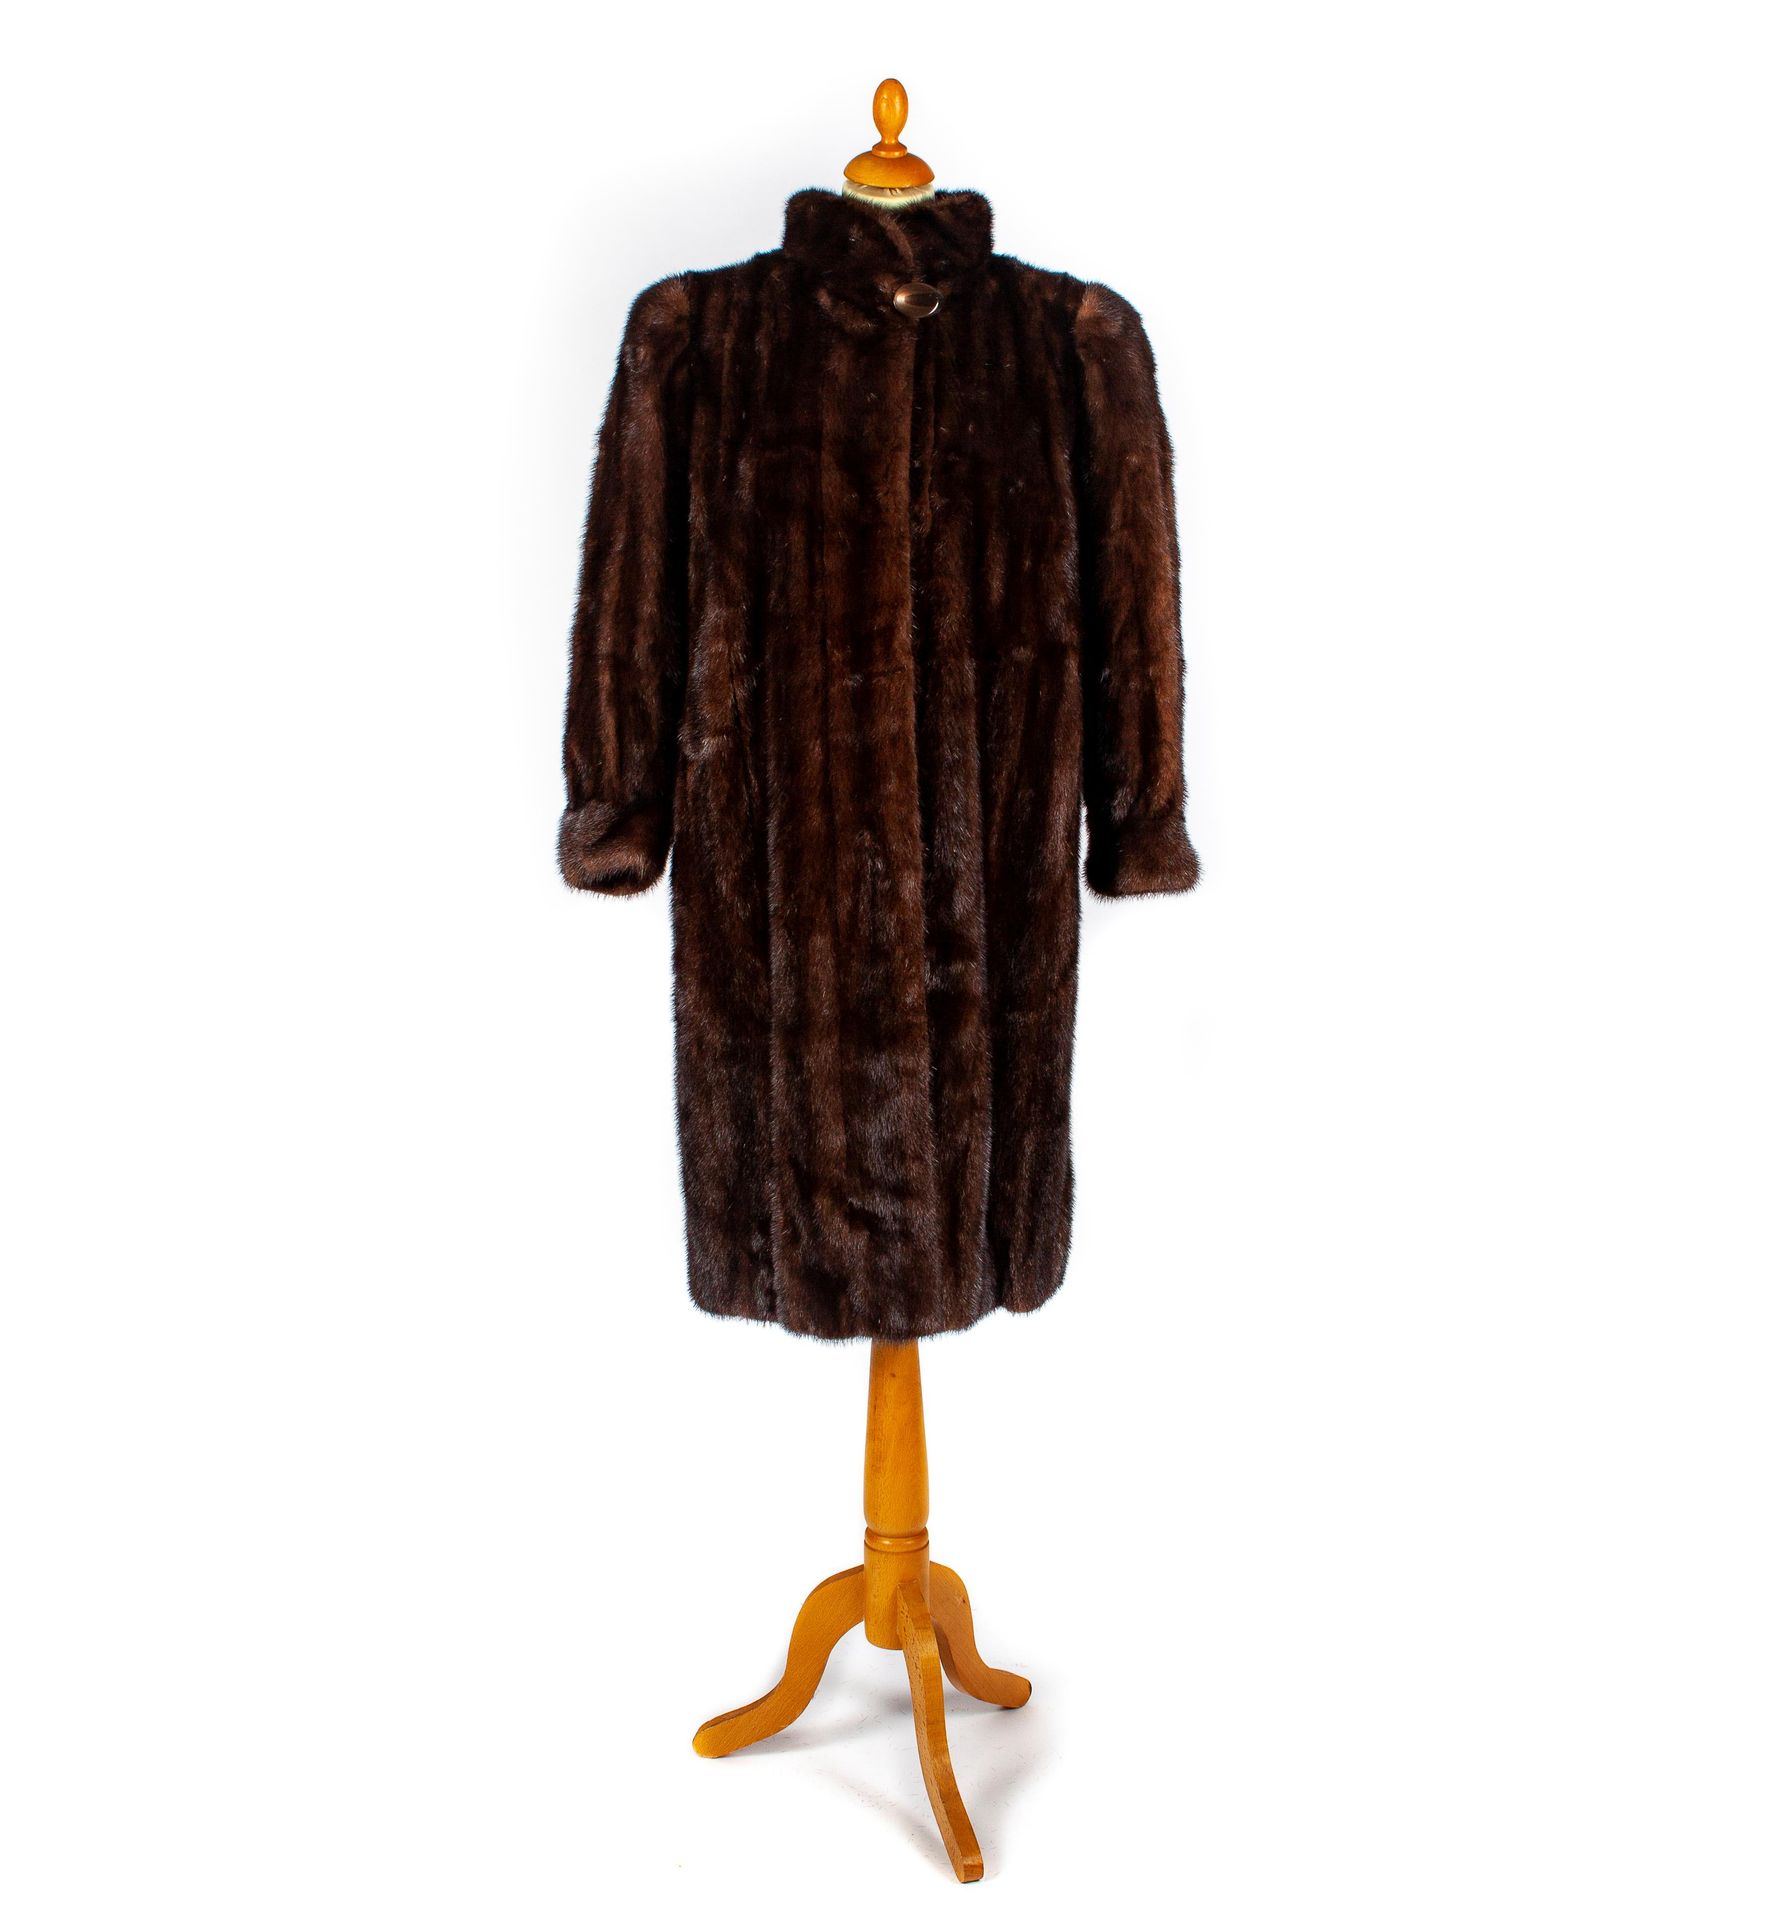 REVILLON REVILLON - Paris 

Mink coat, funnel neck

Size M 

As is